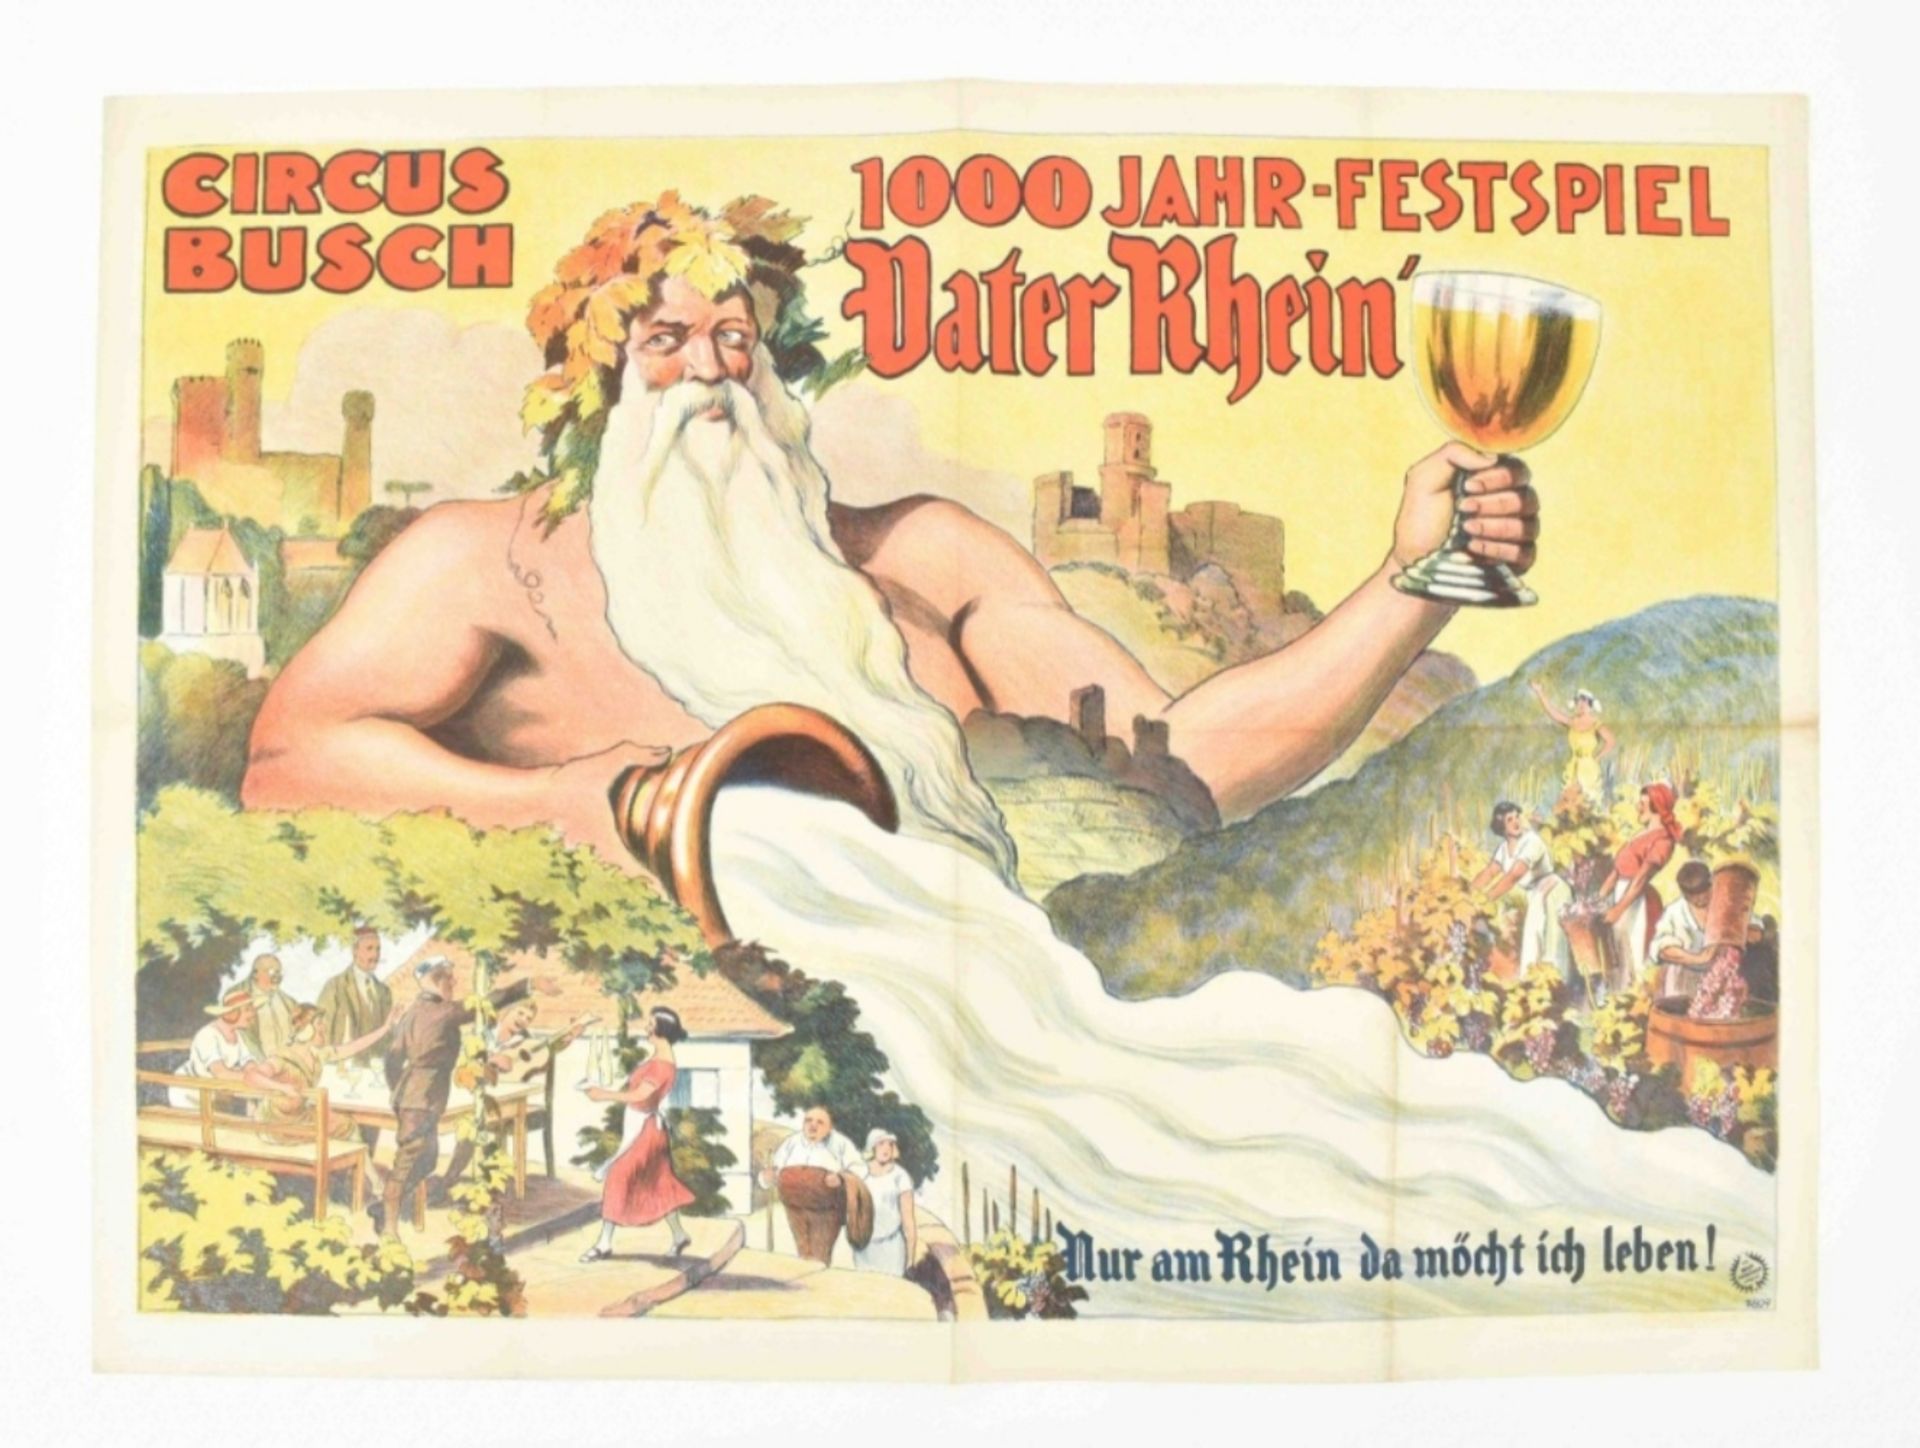 [Entertainment] Vater Rhein. 1000-jahre Festspiel Nur am Rhein da möcht ich leben. Friedländer, 1925